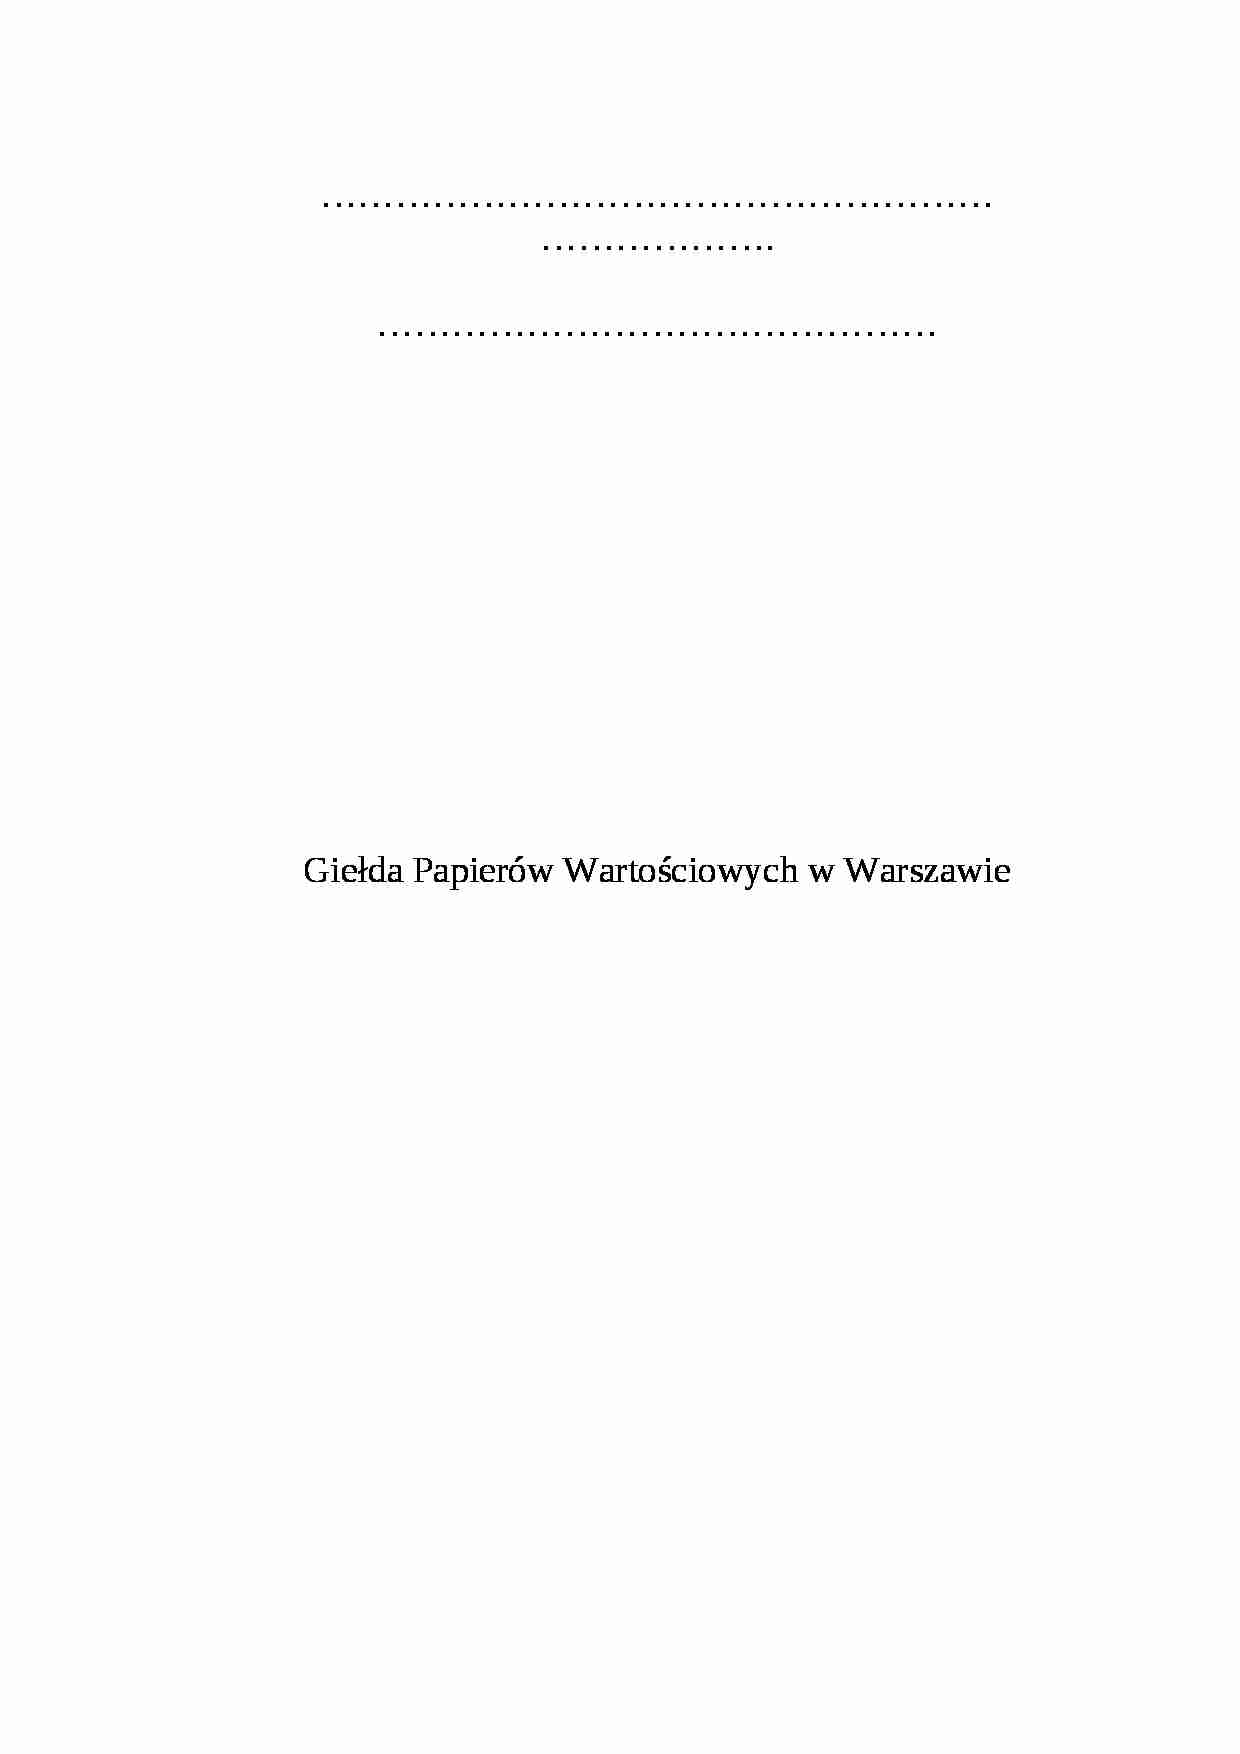 Giełda papierów warto_ściowych w Warszawie - wykład - strona 1